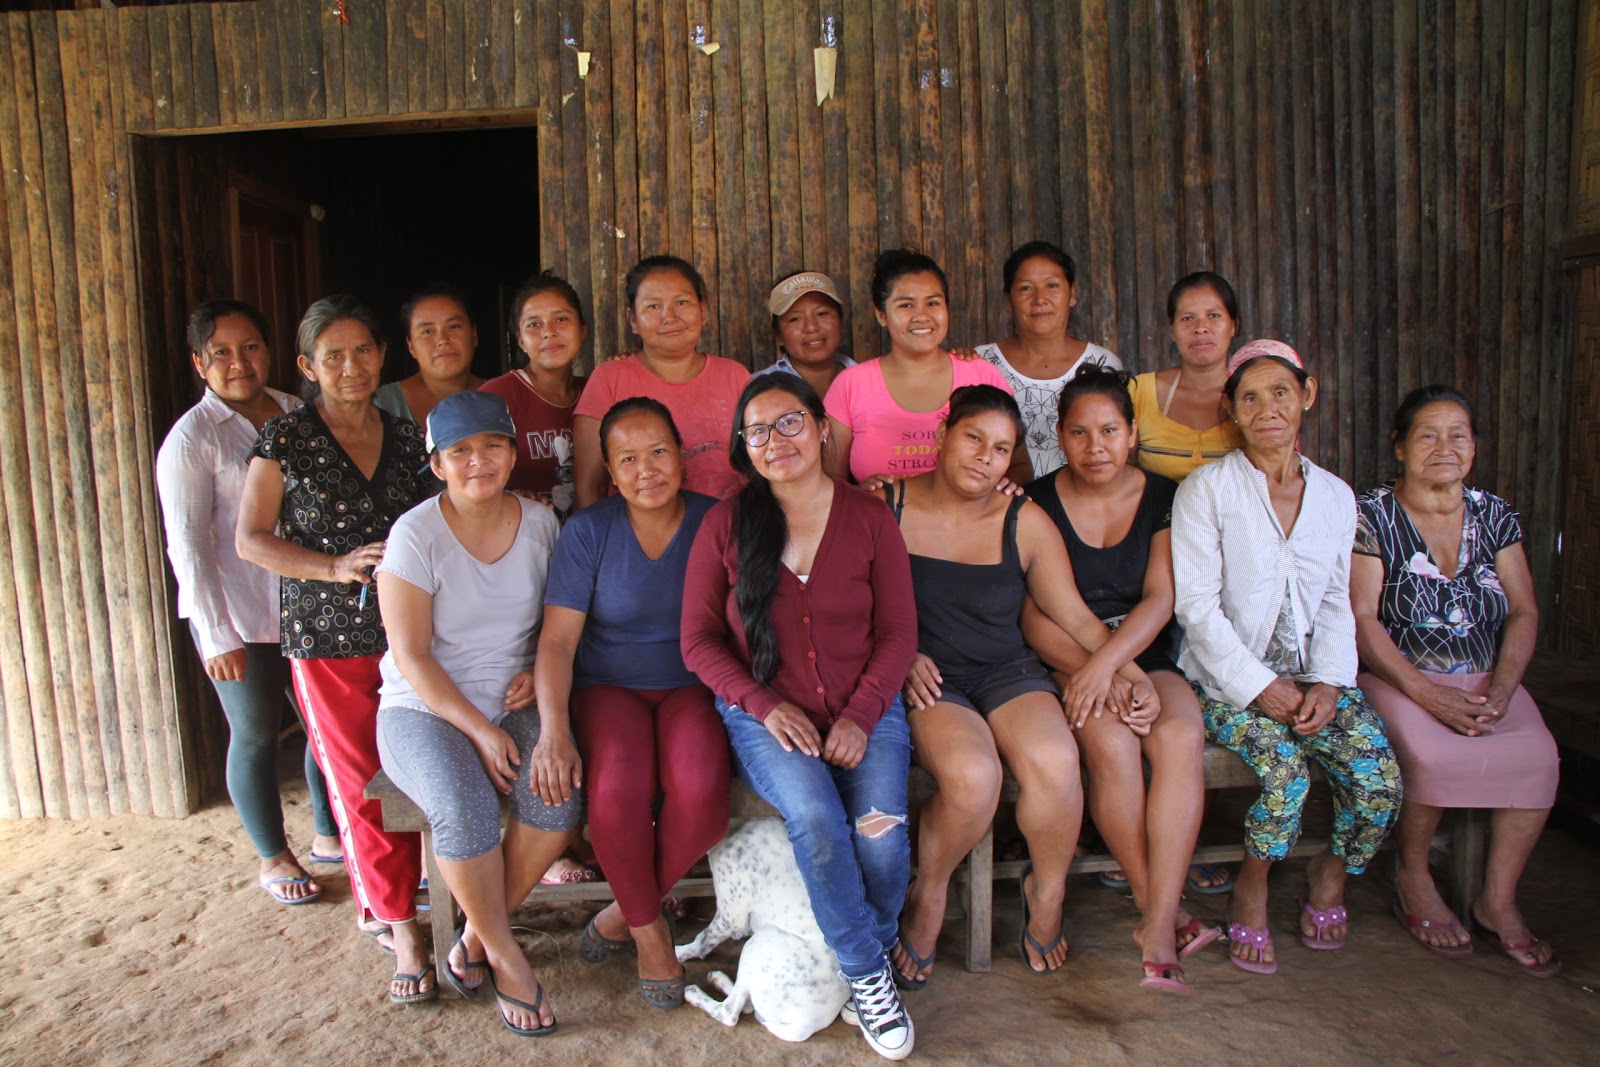 Día Internacional de los Pueblos Indígenas: mujeres que protegen los conocimientos ancestrales de sus comunidades - sFLq4zCvqhl5YD9kPQj4vFYt55WMIVZ79DQfzcZjGfXgXXLe0h-m6kv2V31Aqytaz0wd8_8rhAtu6o3YxxhOMCmc3TdSaJdVoMvSEE8fdi88j0H-H11uKxXdvDudK-nY_lcYuw0n8vPGrqjv27-AFjk